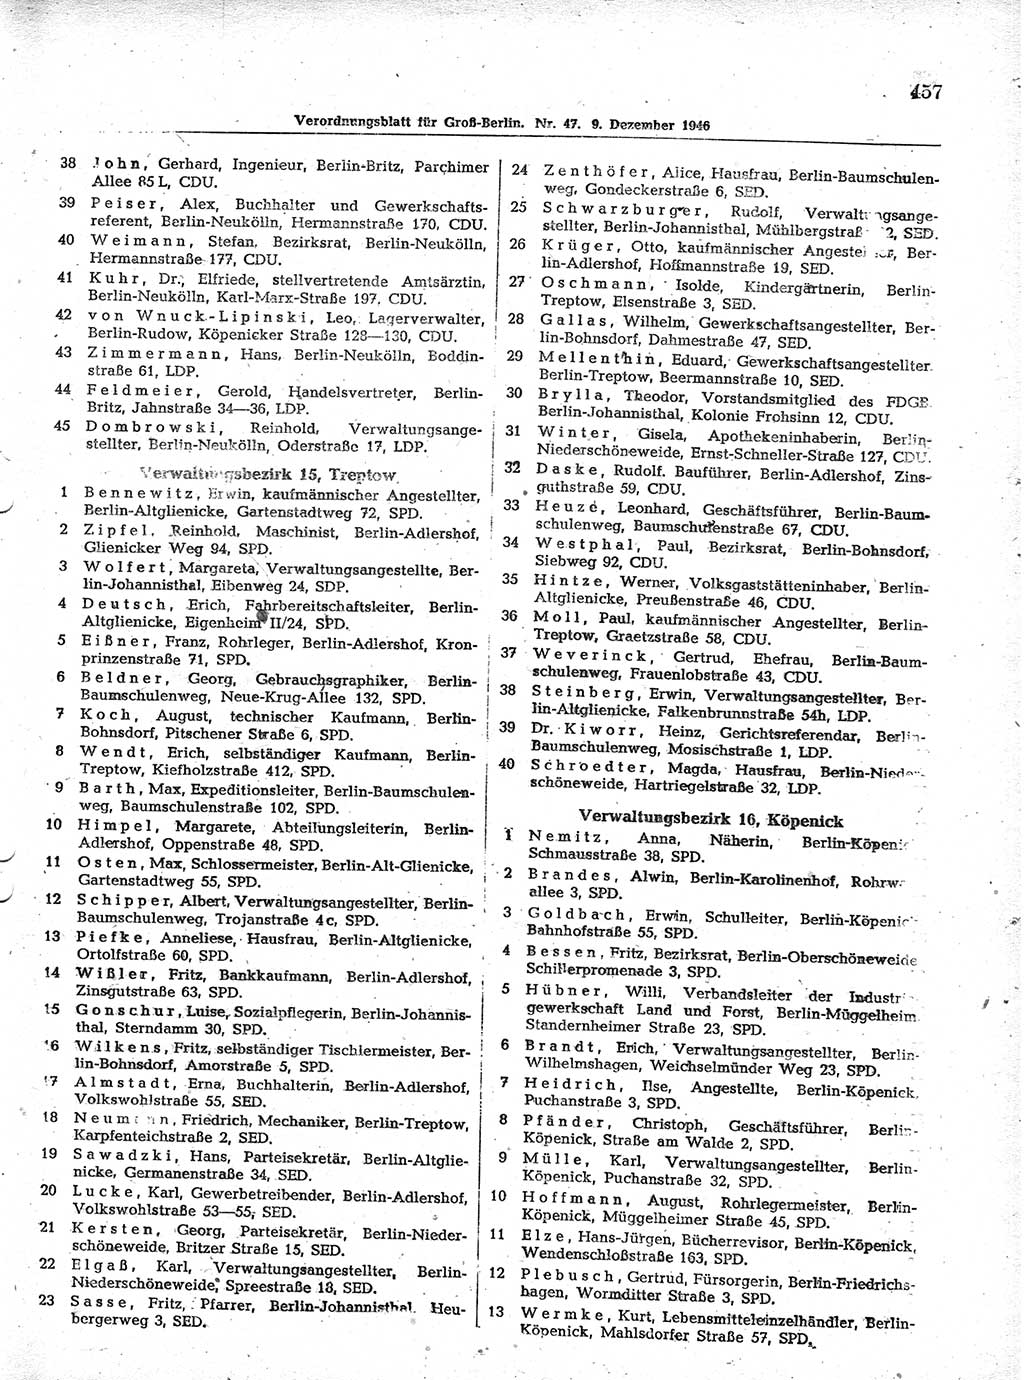 Verordnungsblatt (VOBl.) der Stadt Berlin, für Groß-Berlin 1946, Seite 457 (VOBl. Bln. 1946, S. 457)